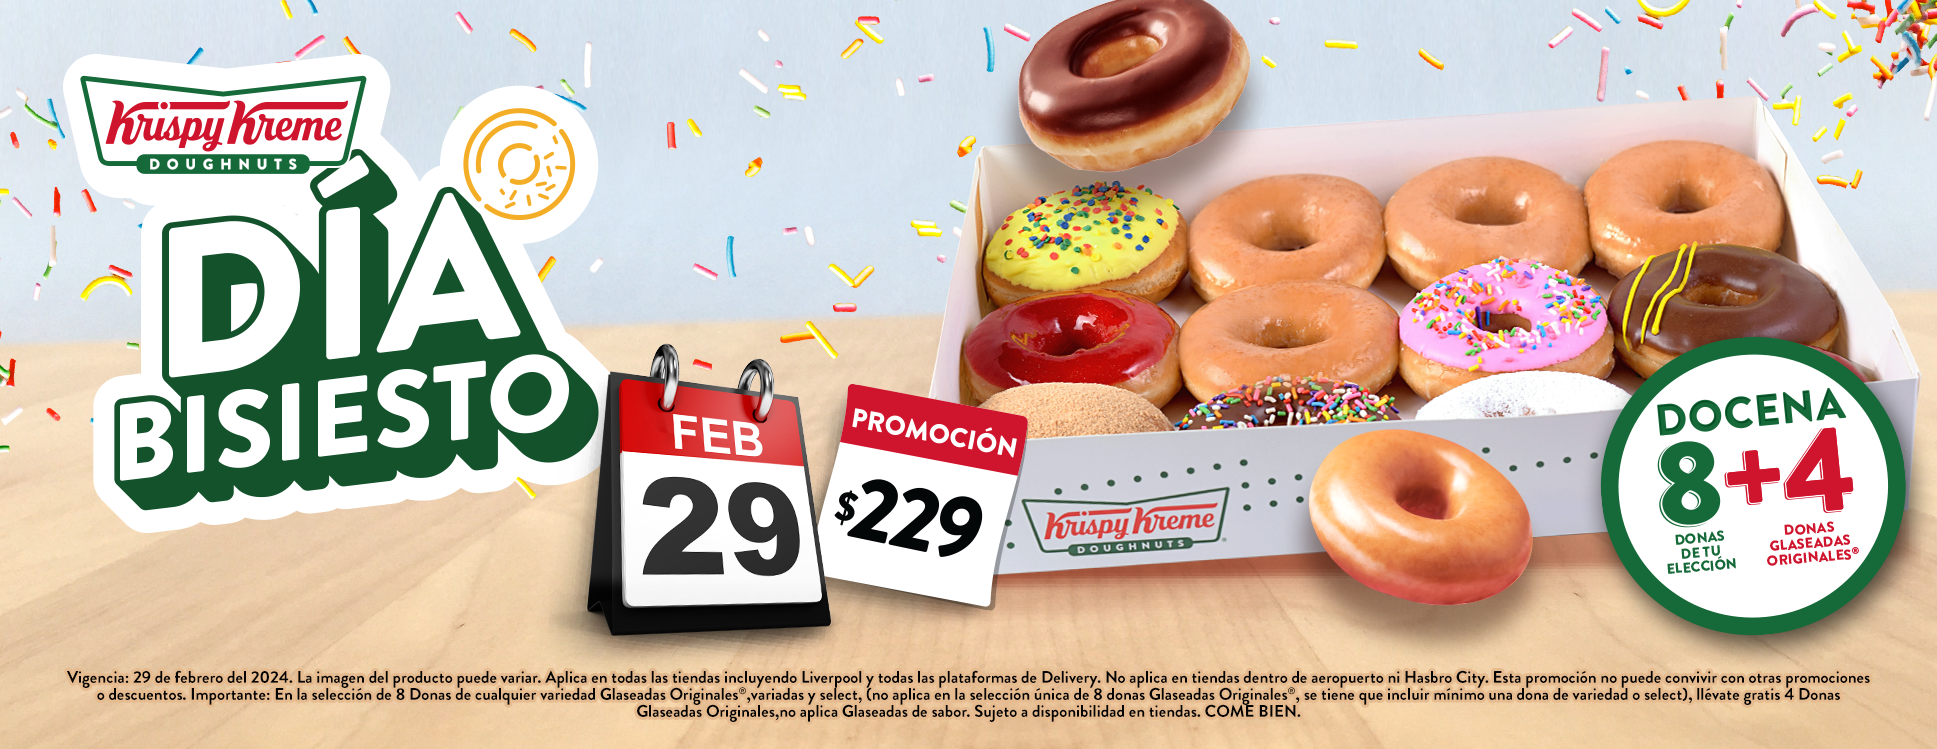 Krispy Kreme tendrá una promoción especial por el día bisiesto